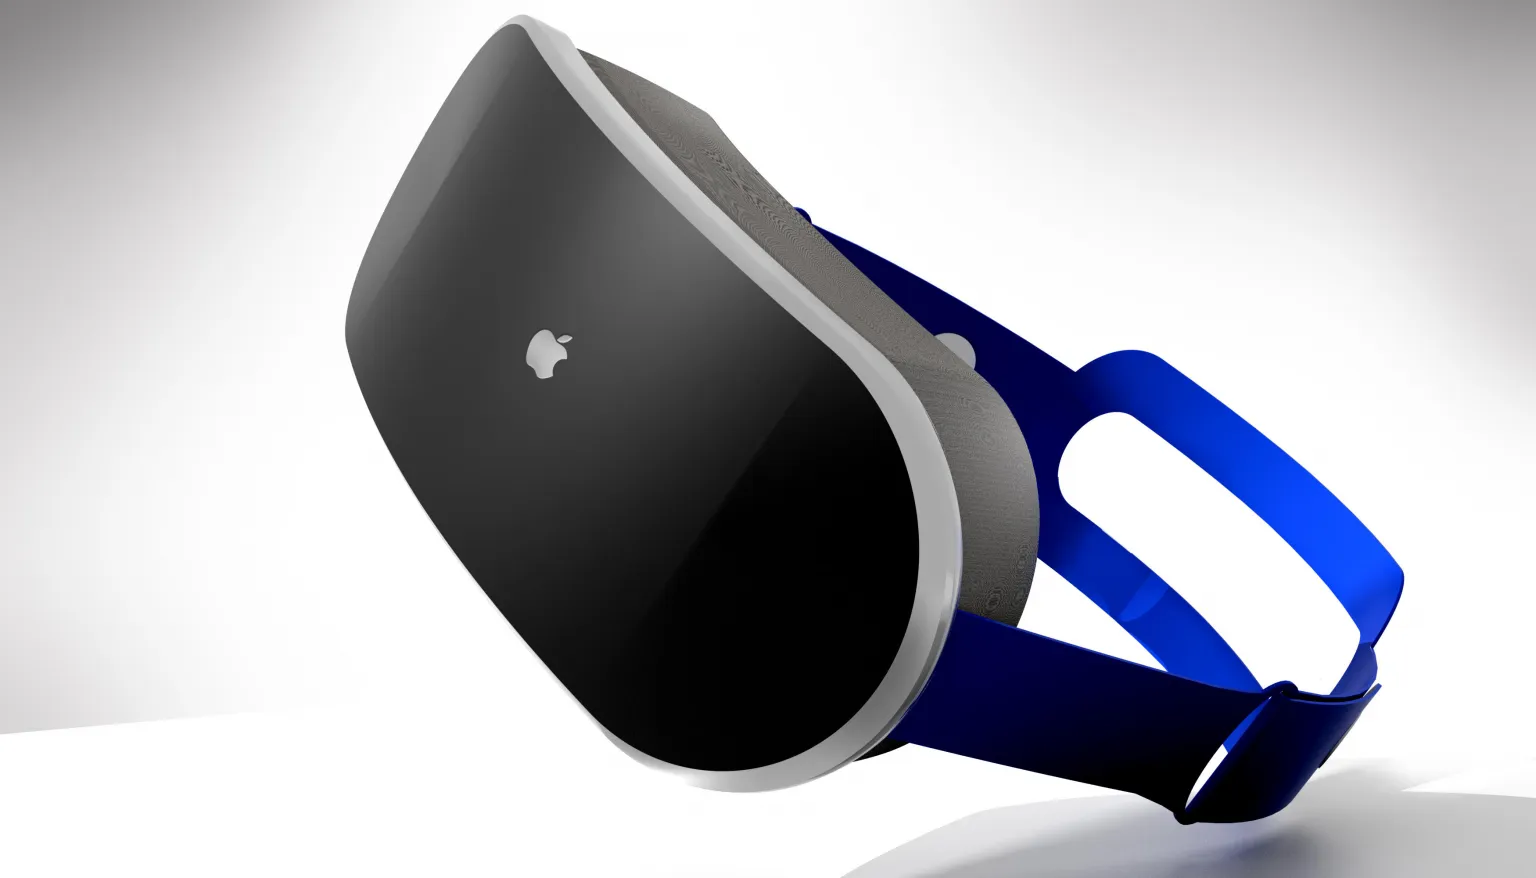 Анонс гарнитуры Apple AR/VR может быть перенесён из-за проблем программного обеспечения